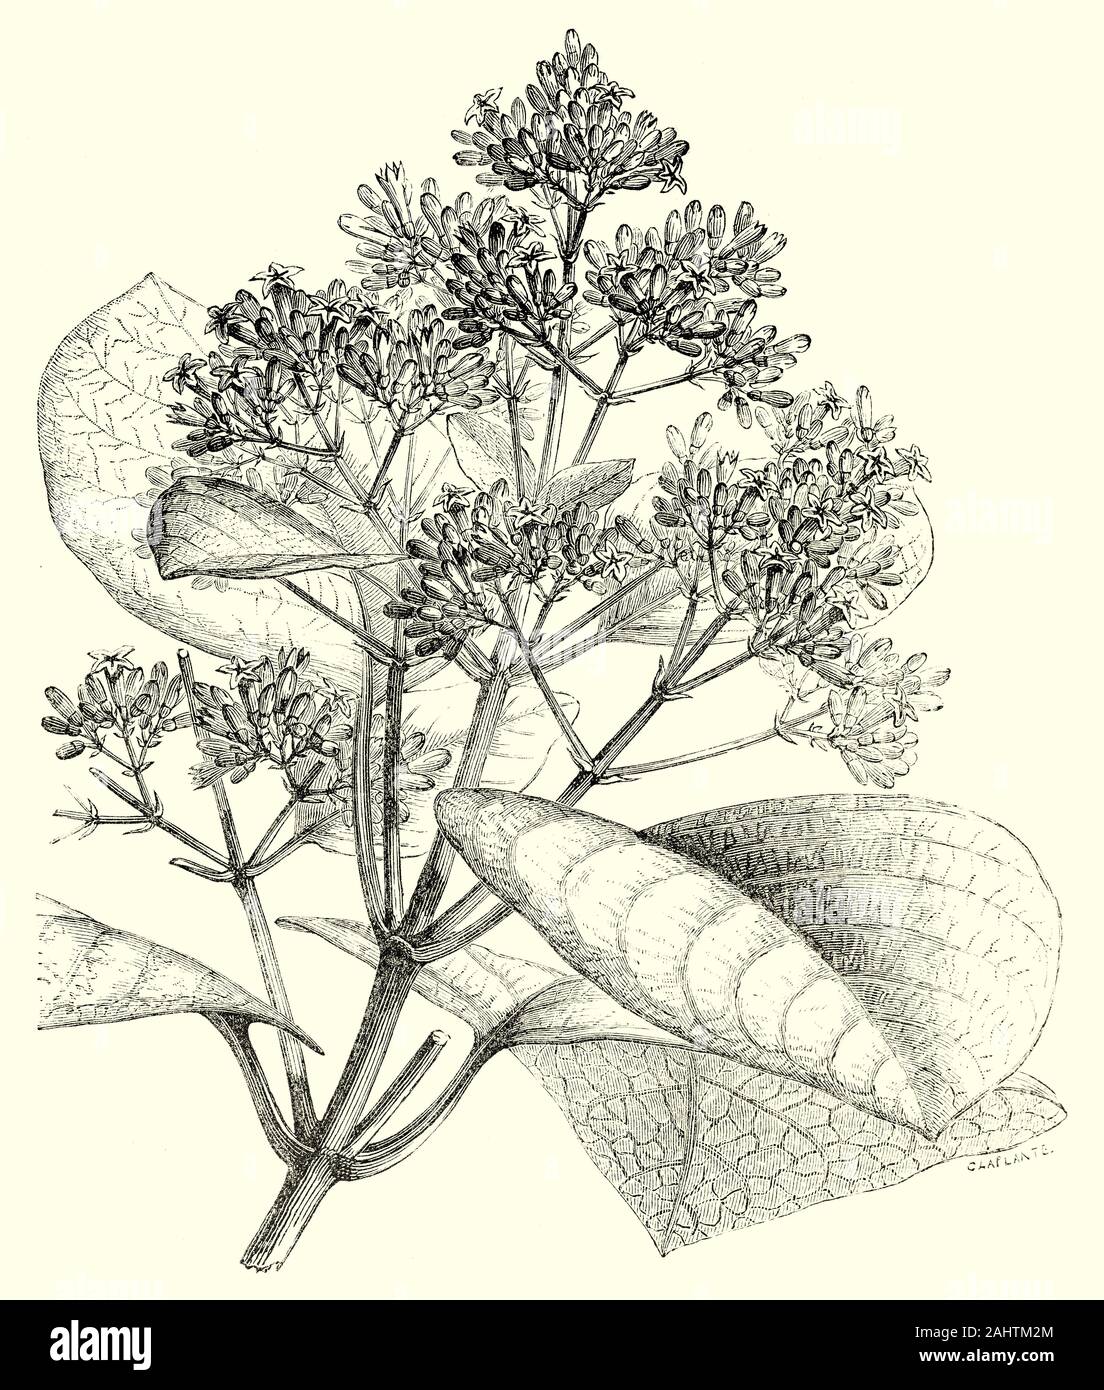 Die Blüten der Cinchona cordifolia, einer der großen Gattung der Bäume der Andenregion Südamerikas in Arzneimitteln Rinde für seine hohe Chinin Inhalt bekannt - und ist an der Produktion von Chinin, zur Behandlung von Malaria. Stockfoto